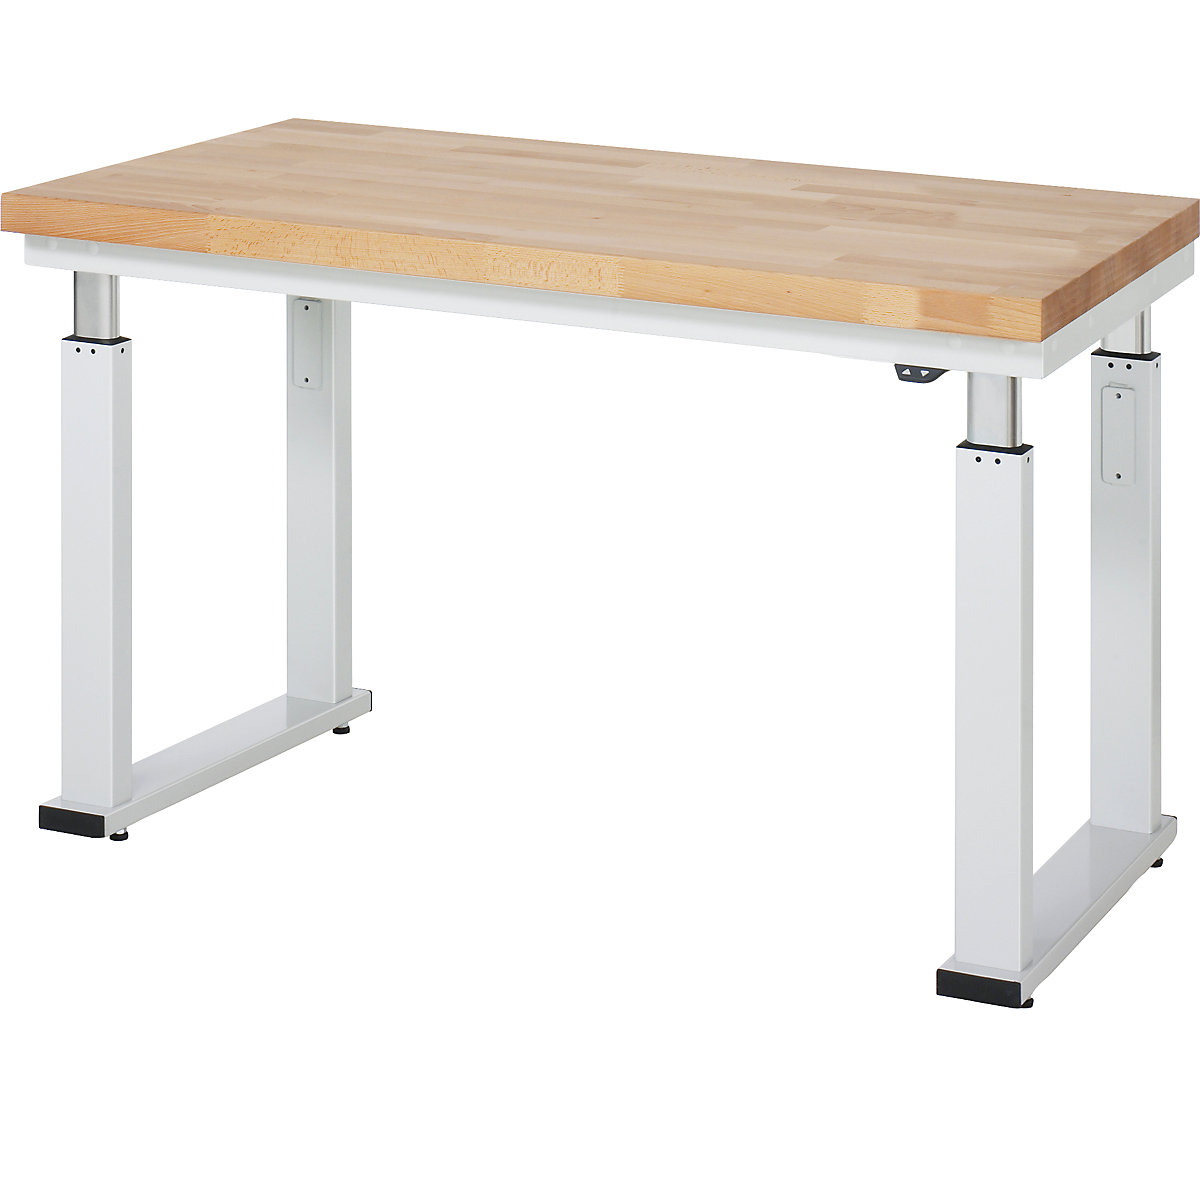 Psací stůl s elektrickým přestavováním výšky – RAU, bukový masiv, nosnost 600 kg, š x h 1250 x 700 mm-17